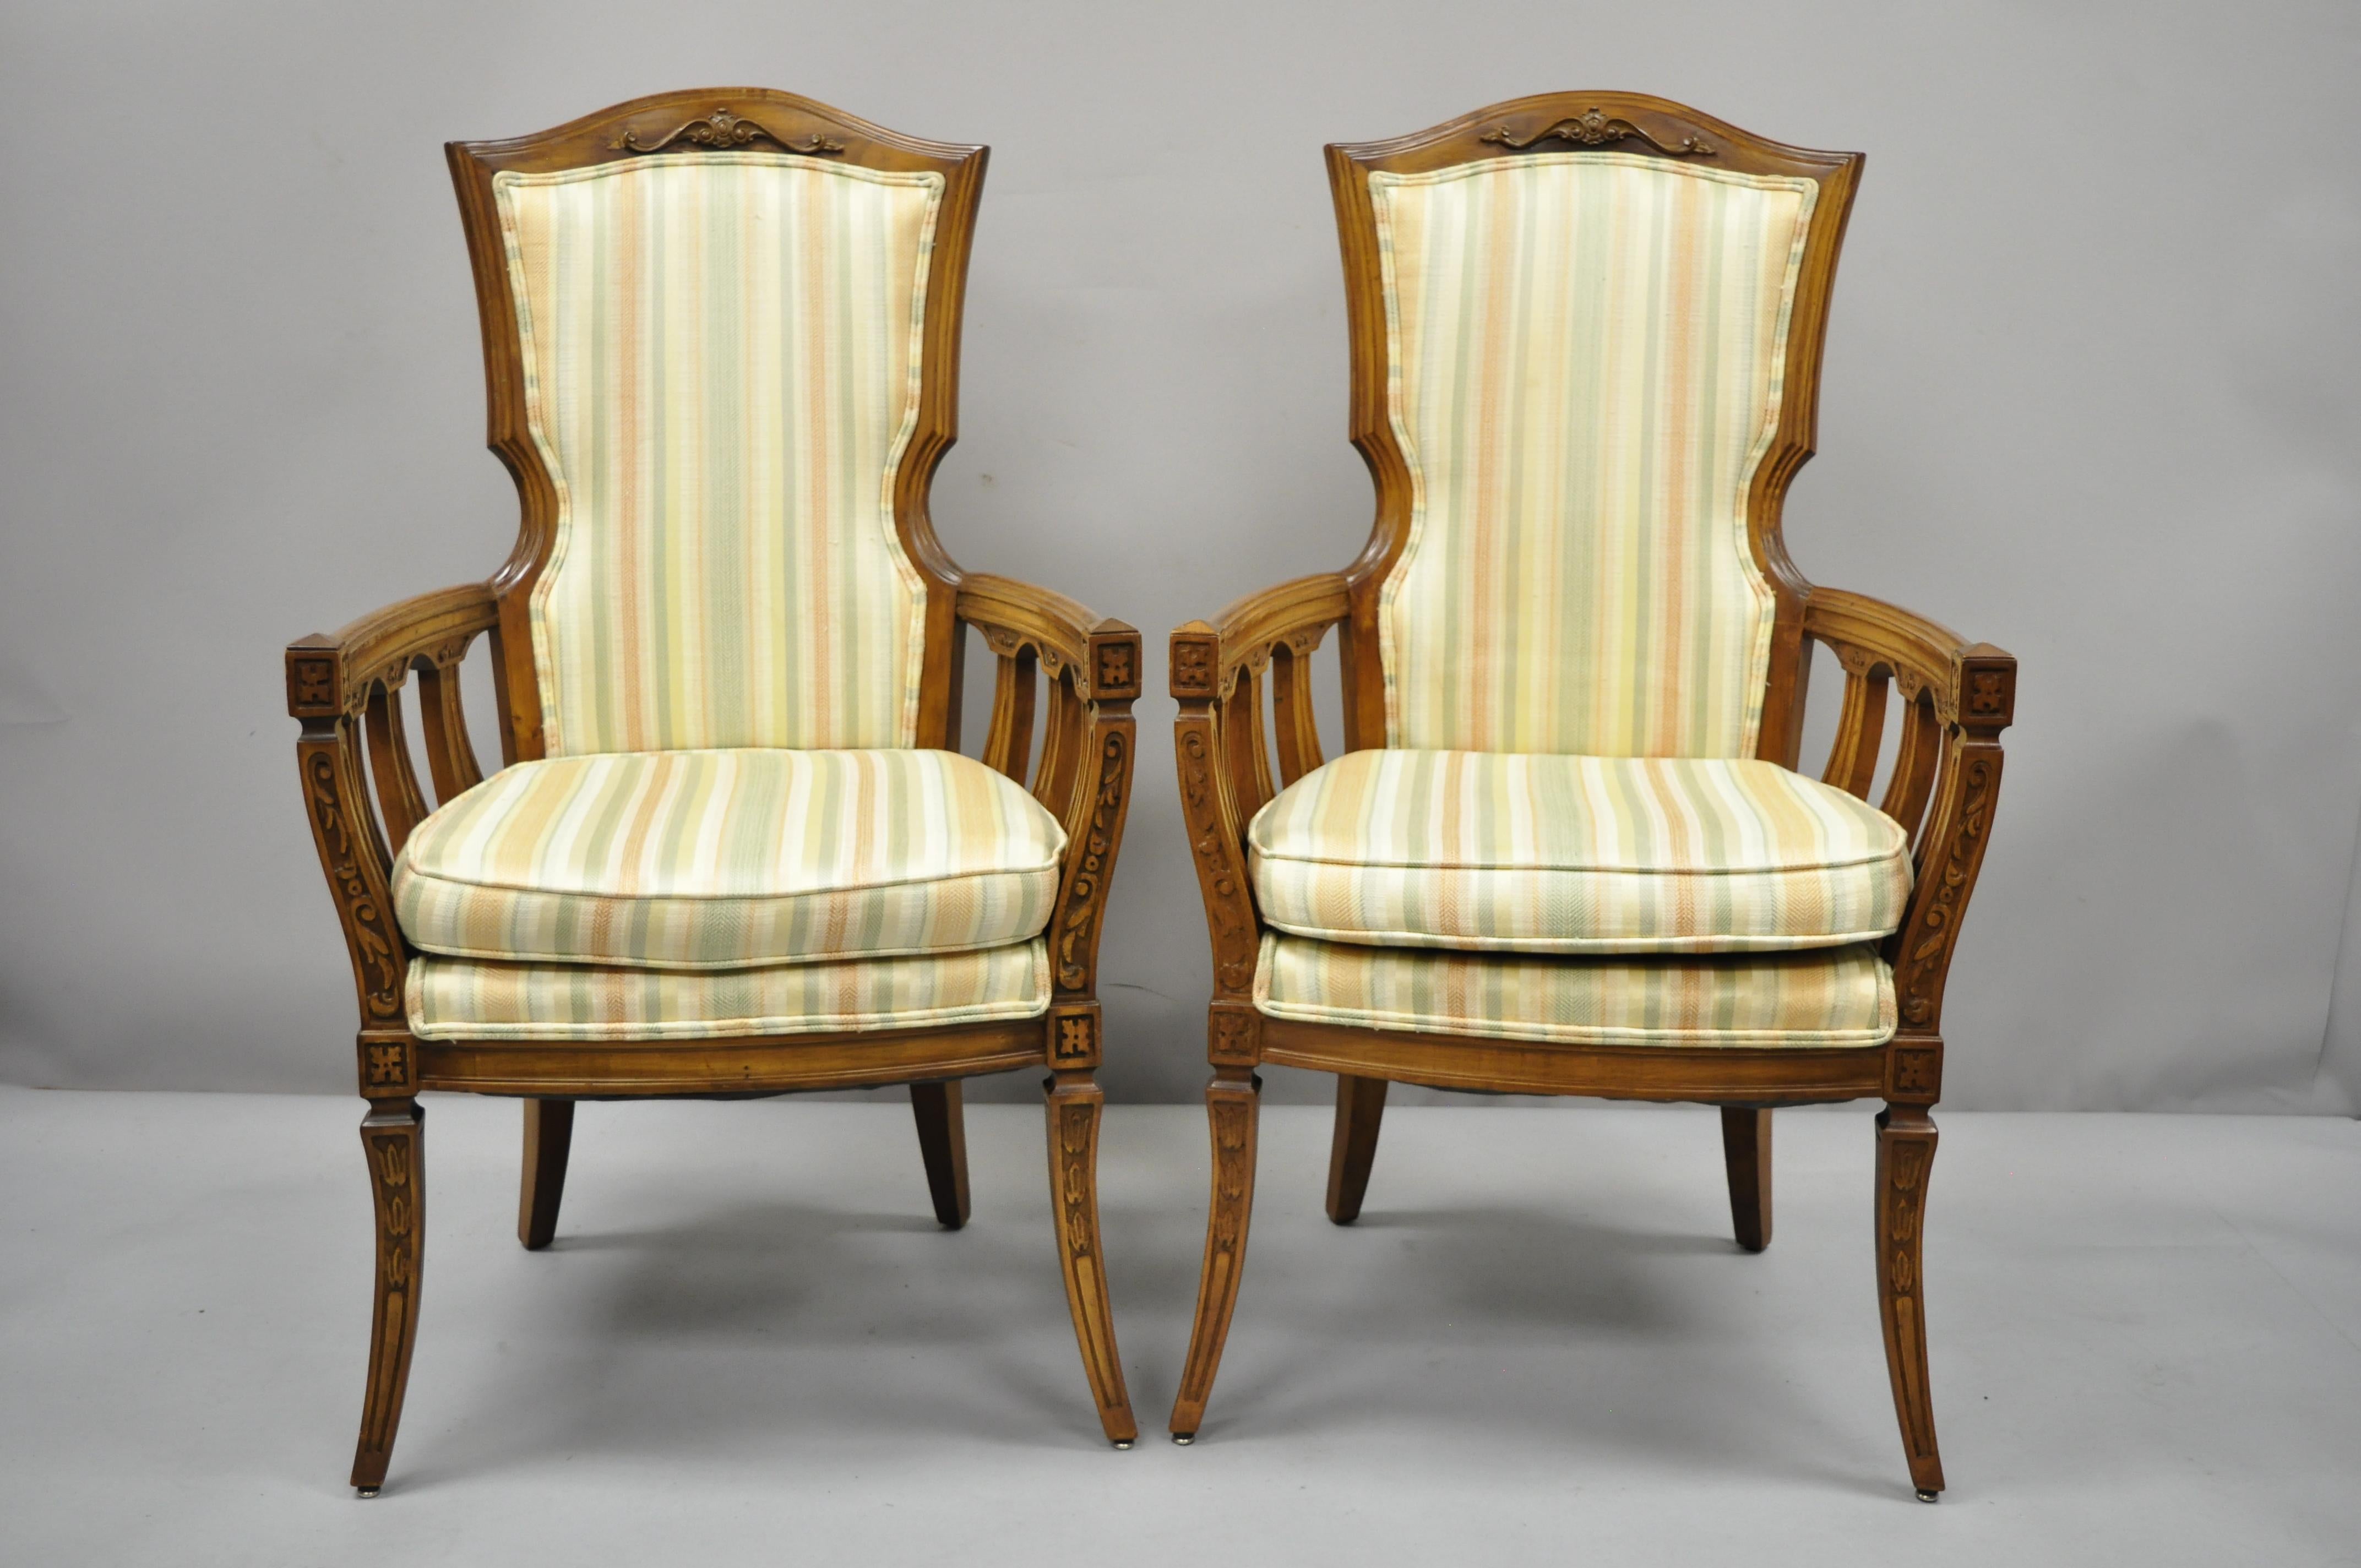 Ein Paar französischer Hollywood-Regency-Sessel mit hoher Rückenlehne im Vintage-Stil. Der Artikel zeichnet sich durch hohe, bequeme Rückenlehnen, einen Massivholzrahmen, schön geschnitzte Details, konisch zulaufende Beine, großen Stil und Form aus.